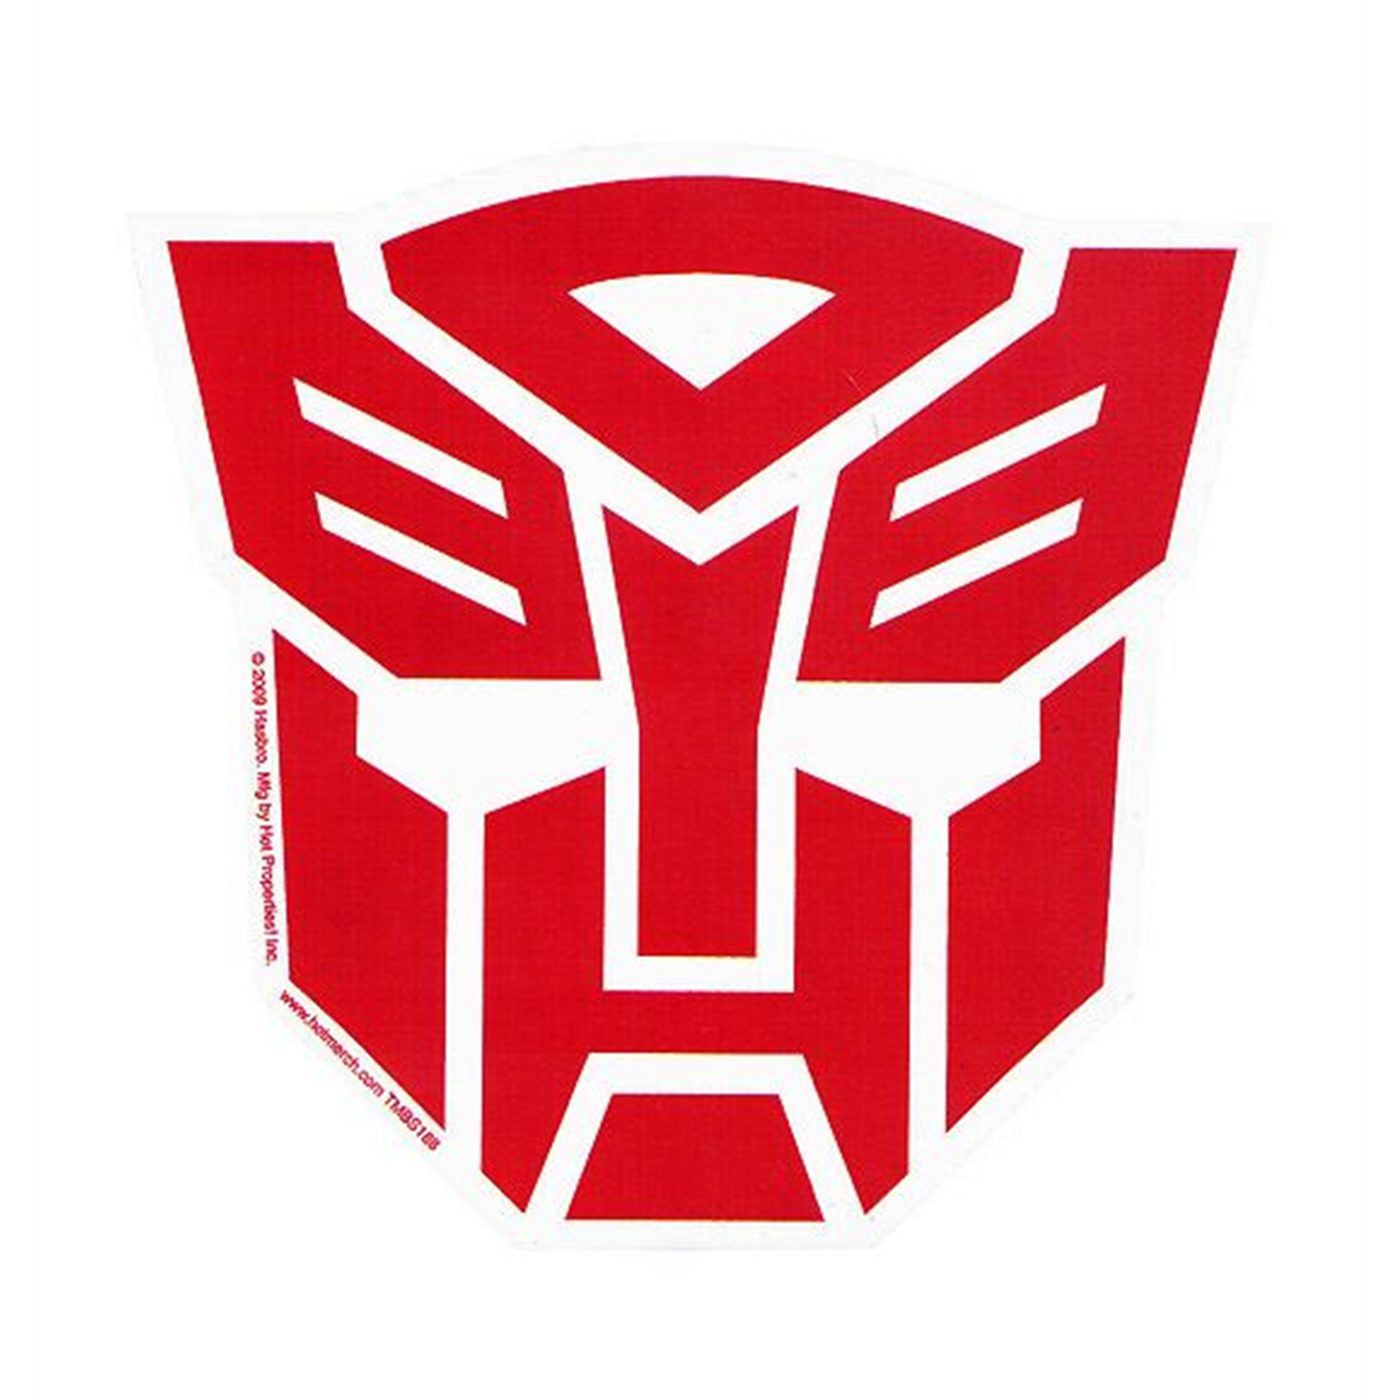 autobot symbol fits over honda emblem